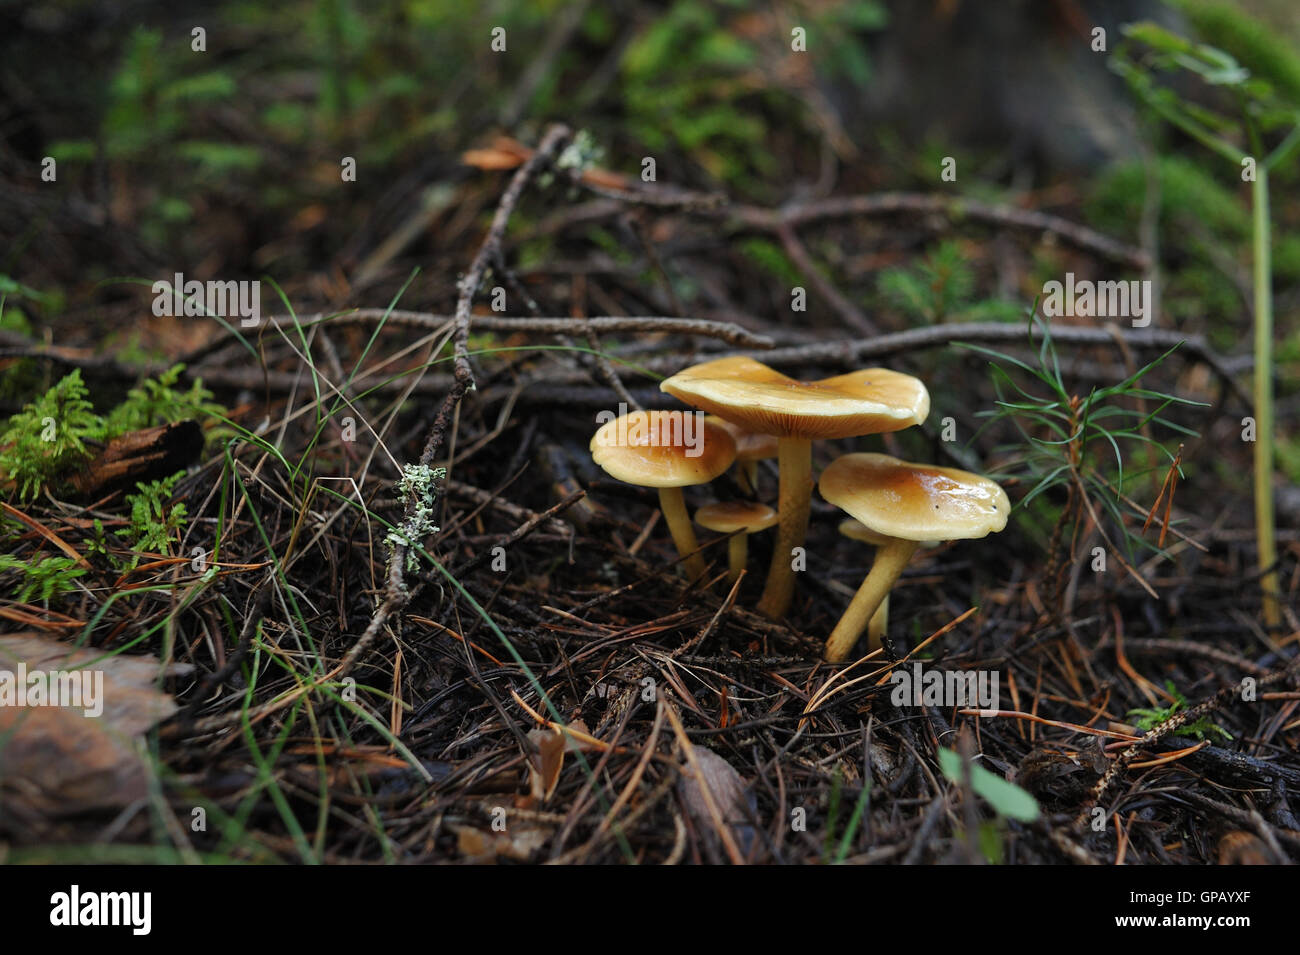 Toadstool velenosi su moss nella foresta vicino fino Foto Stock